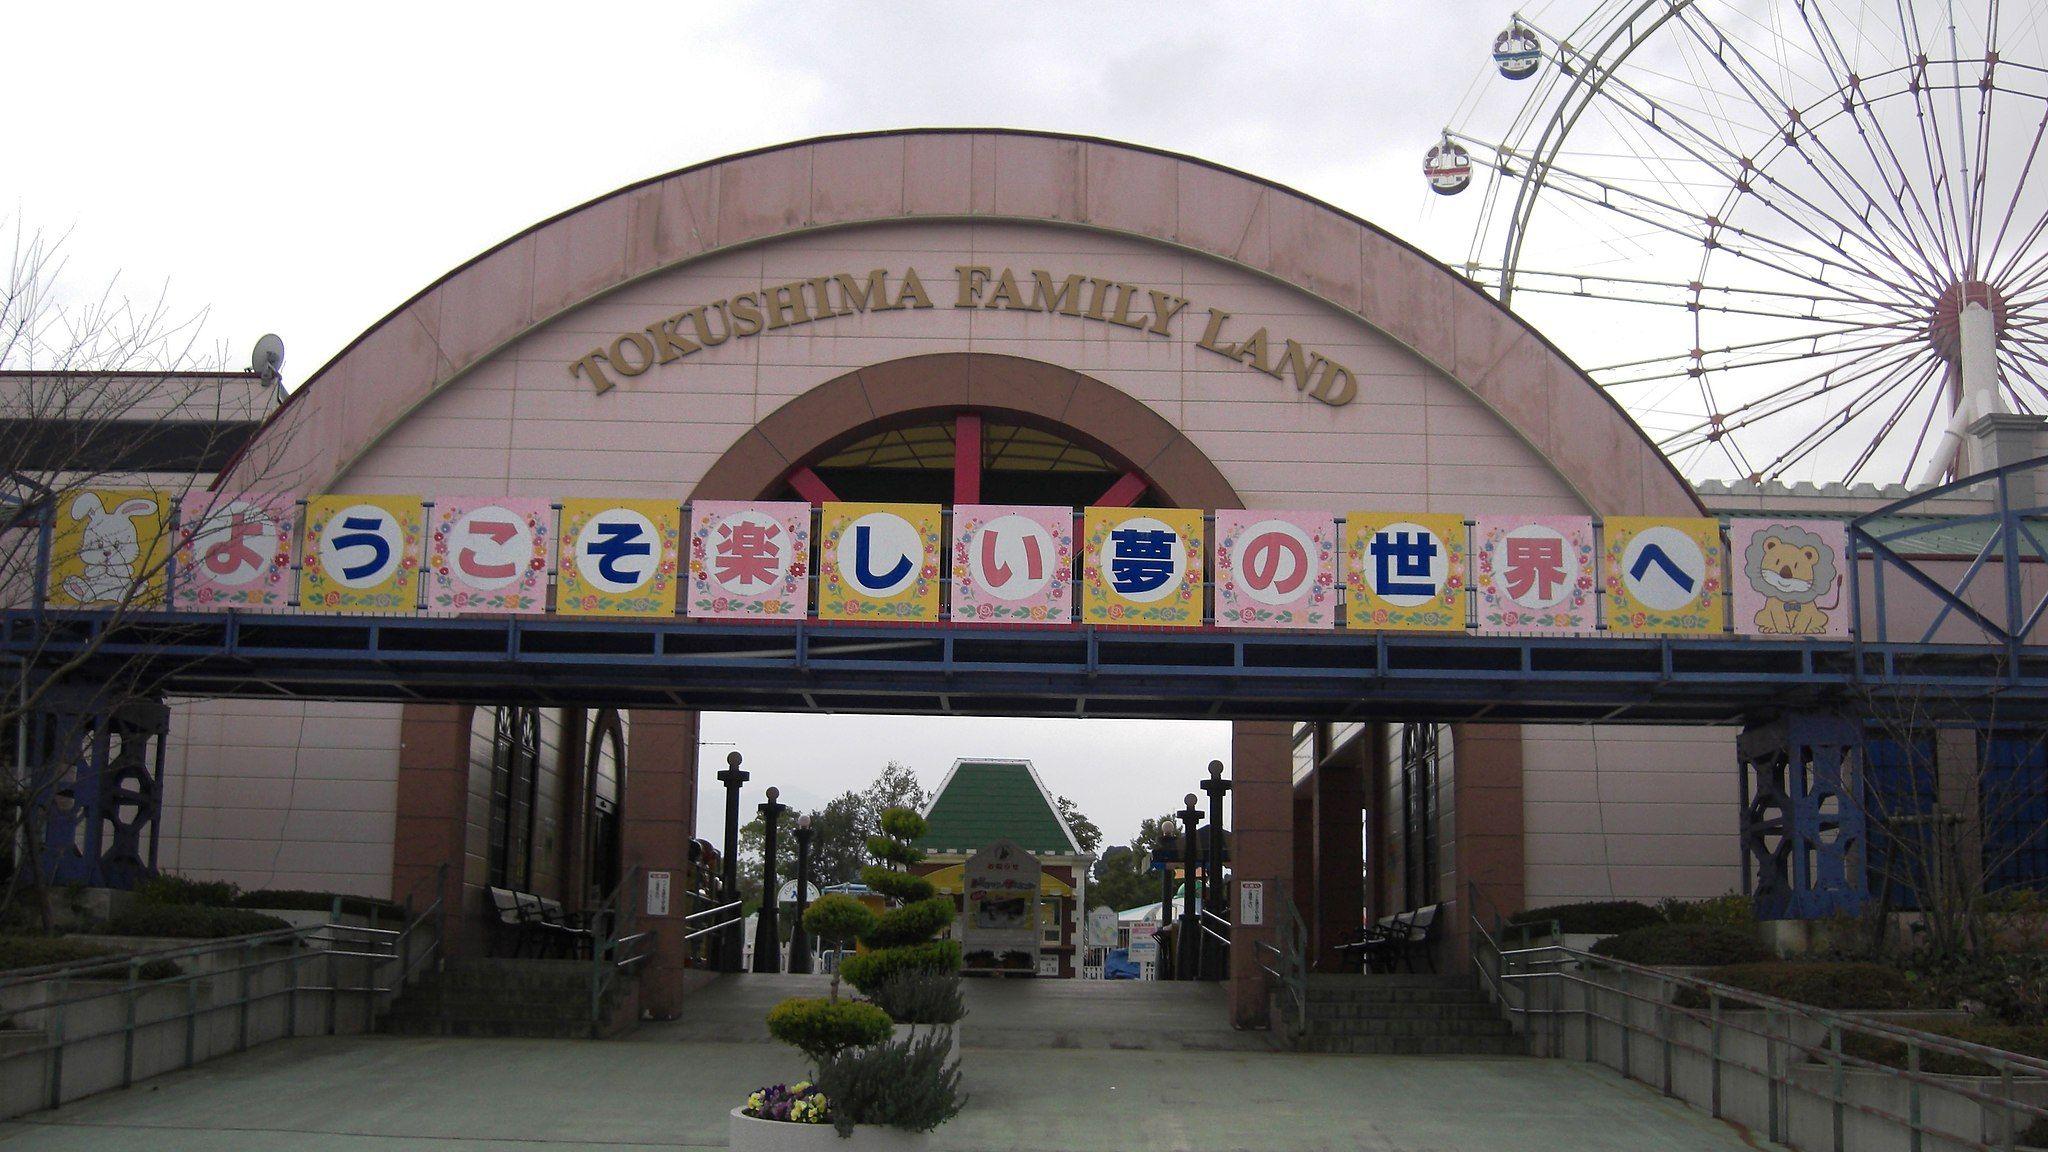 Tokushima Family Land Entrance